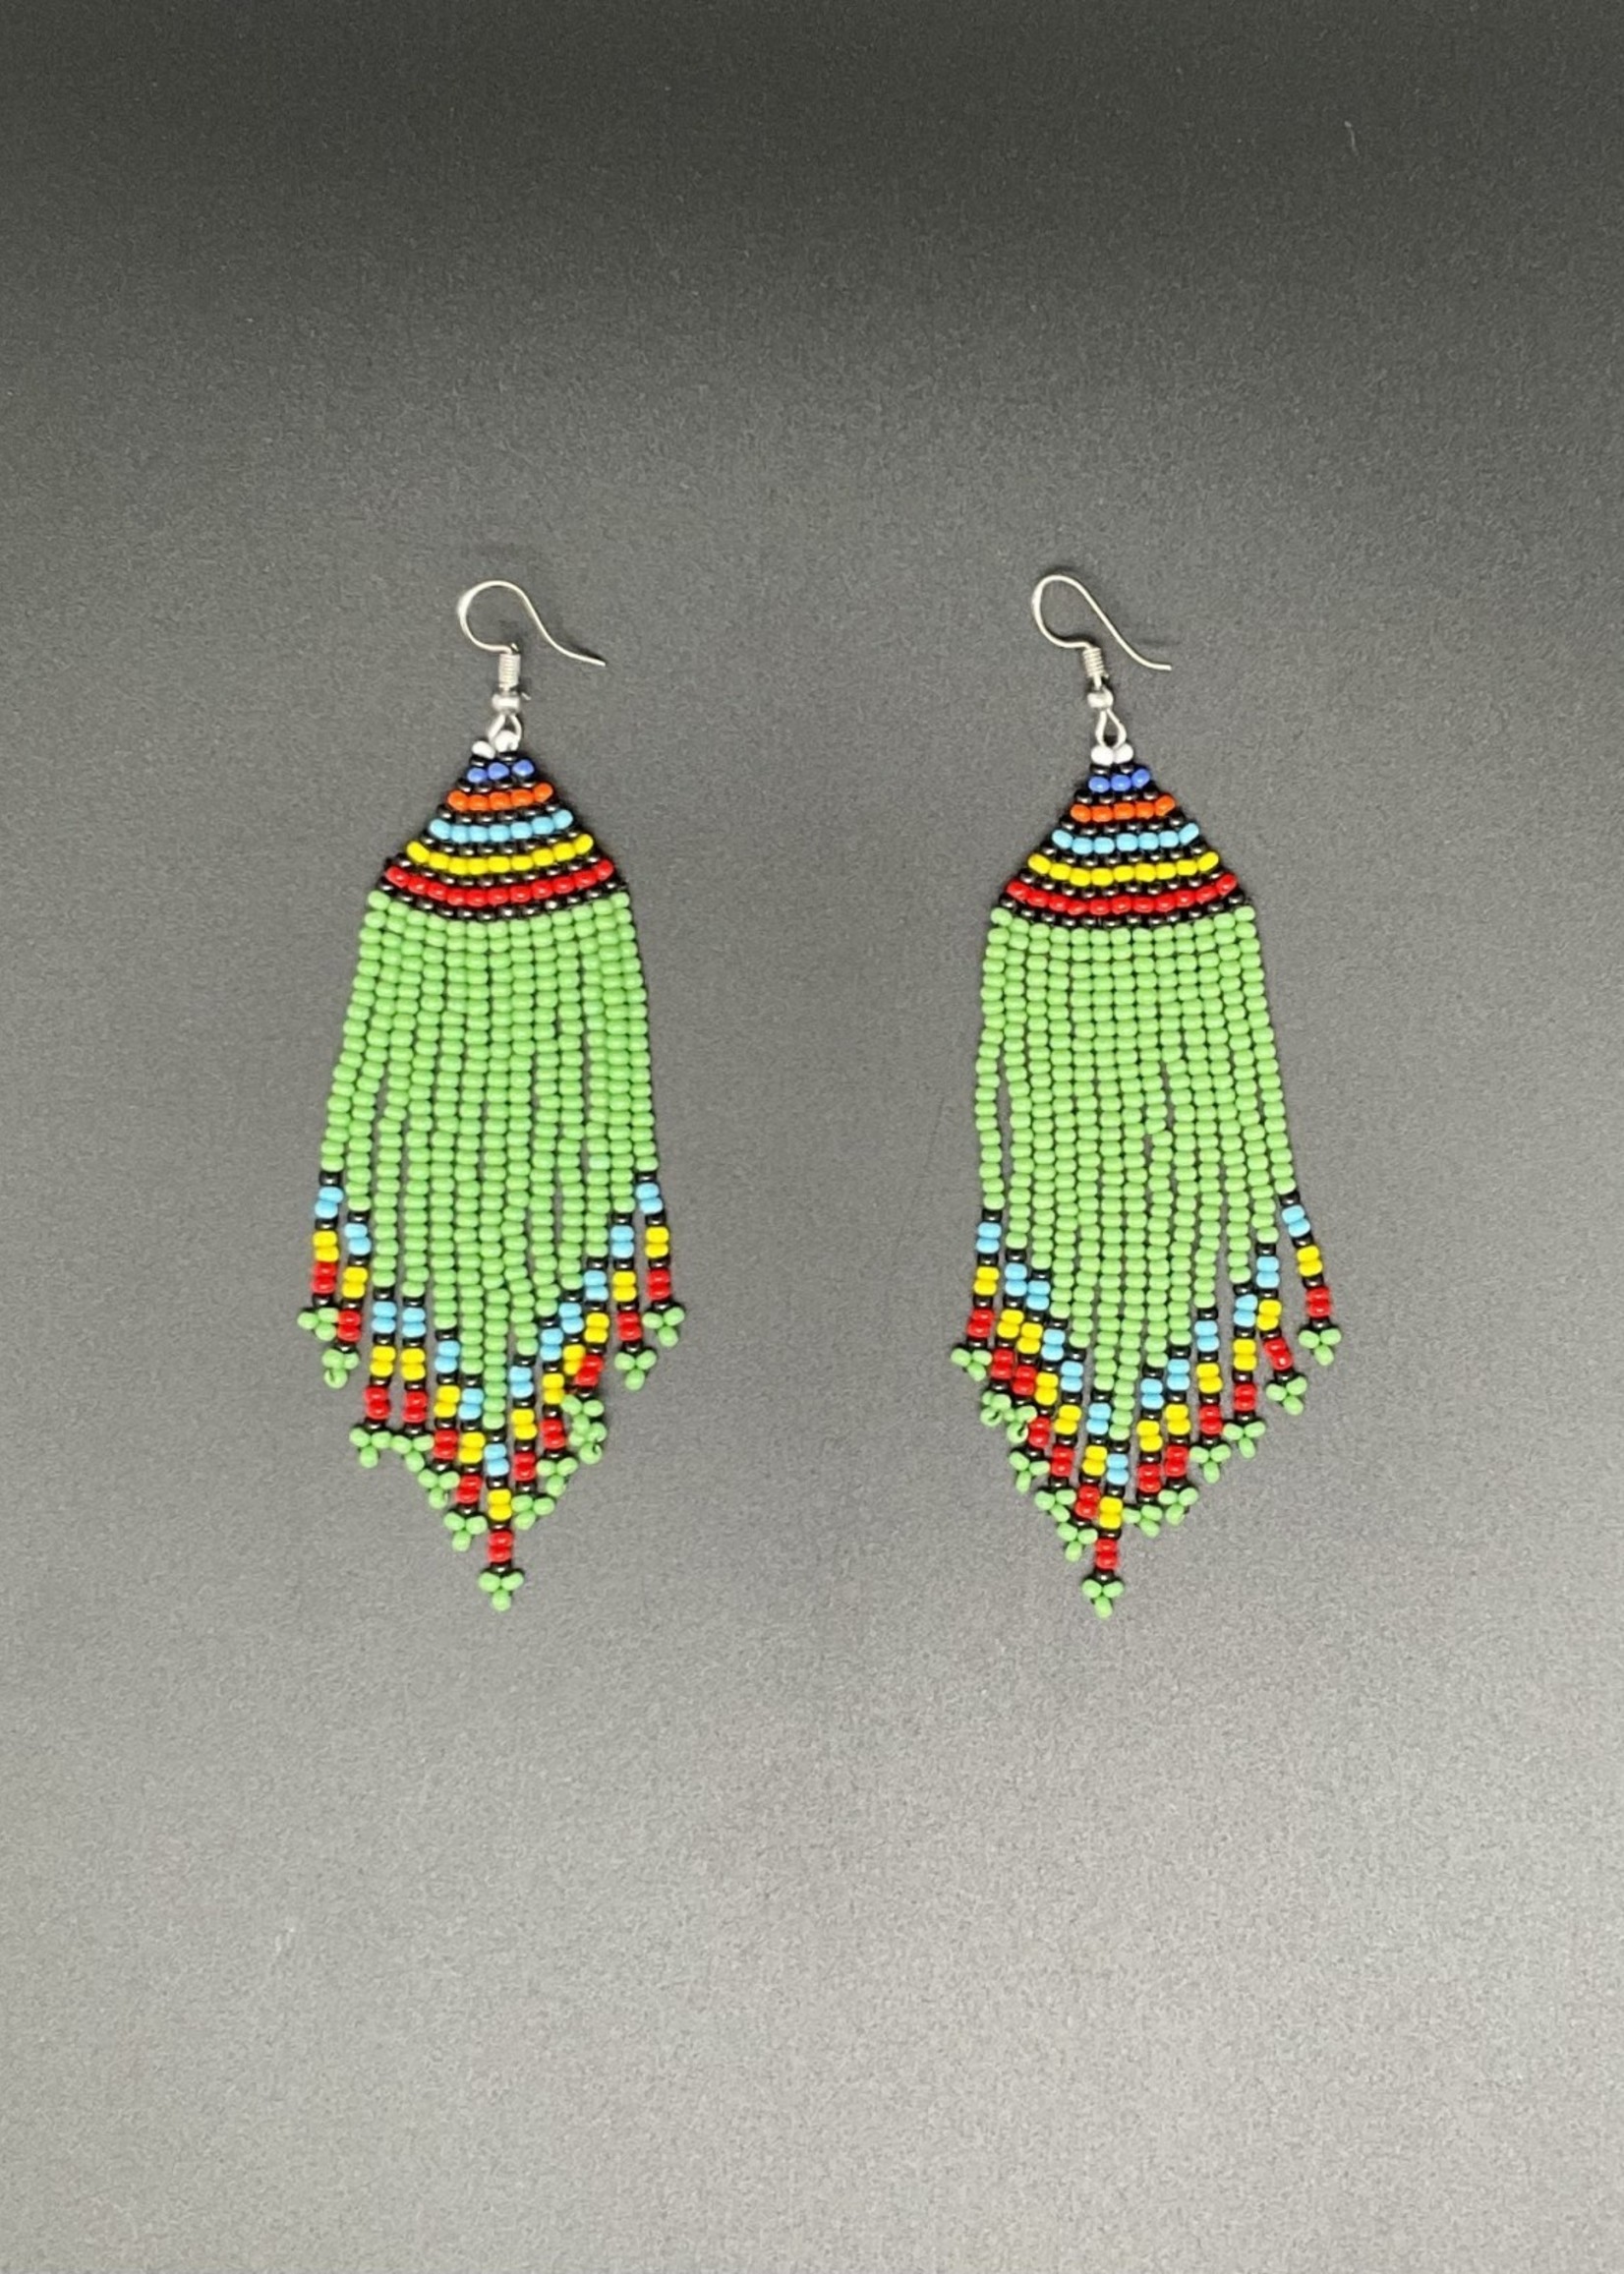 Kenya Long Colorful beaded earrings from Kenya. Green focused